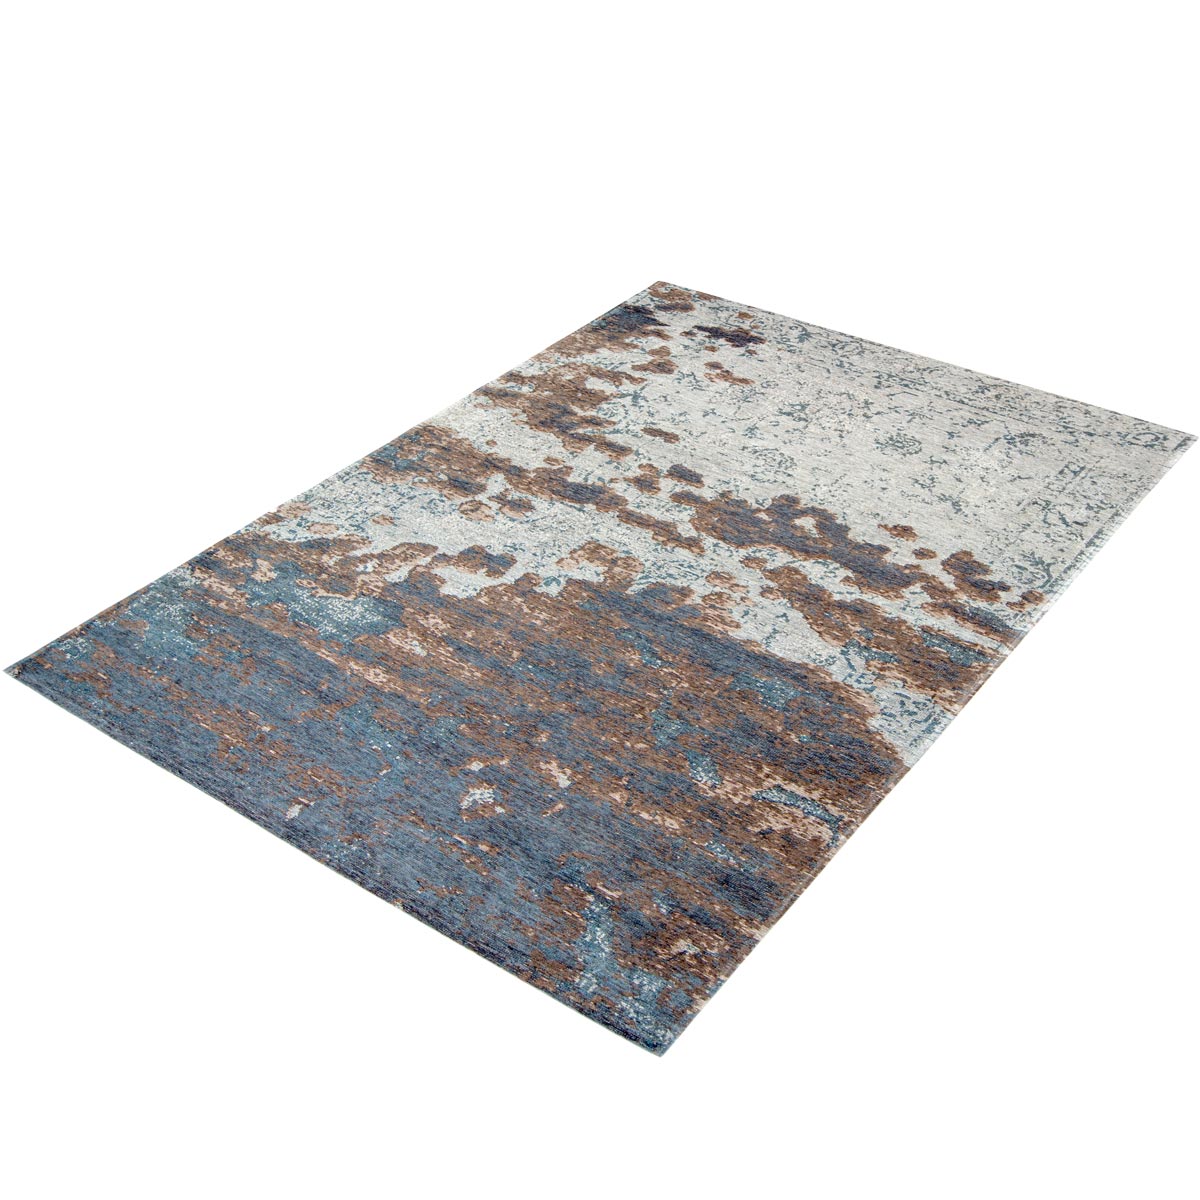 שטיח מרסיי 08 אפור/חום | השטיח האדום